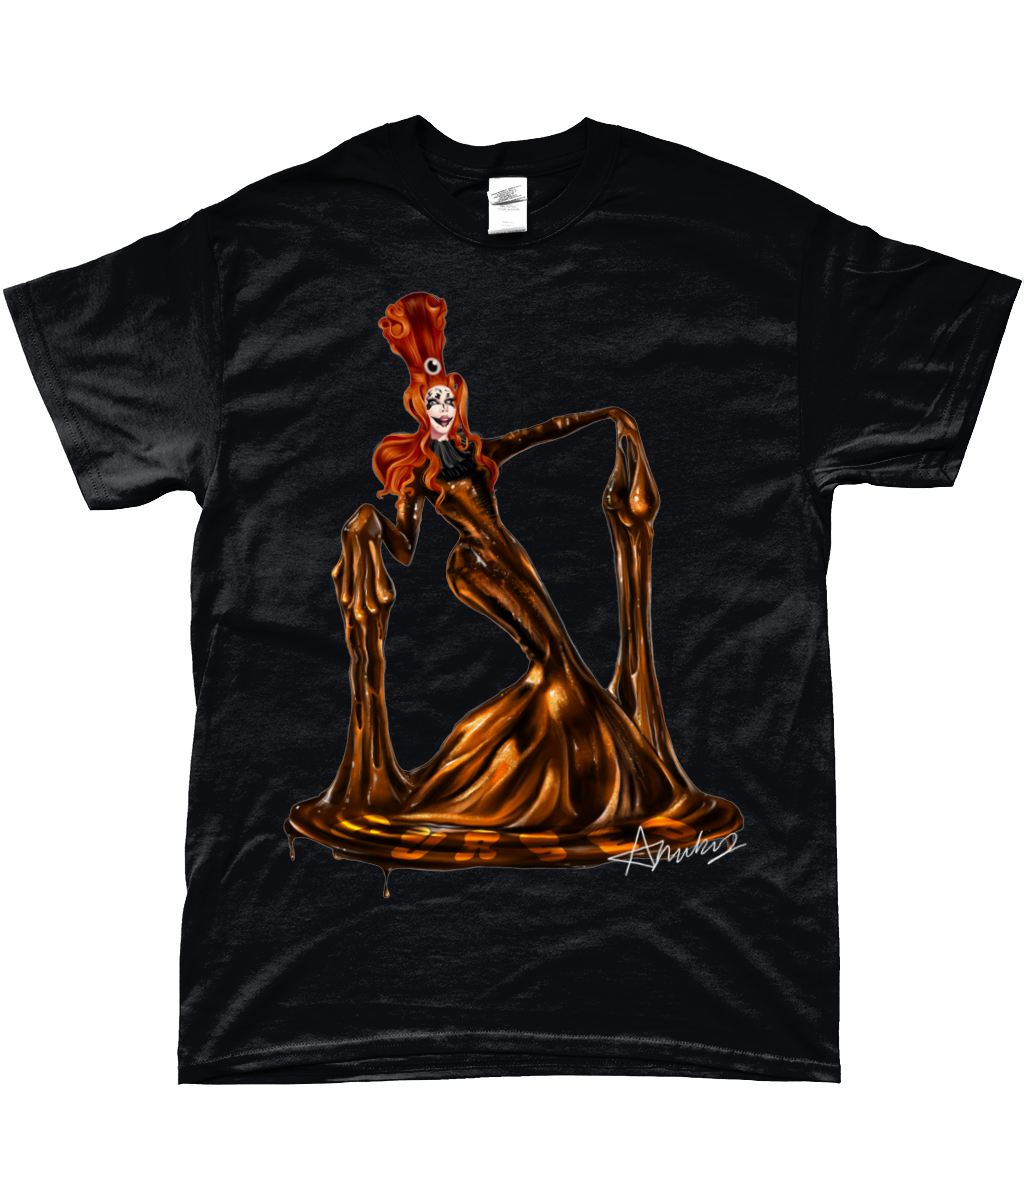 Anubis - Cursed T-Shirt